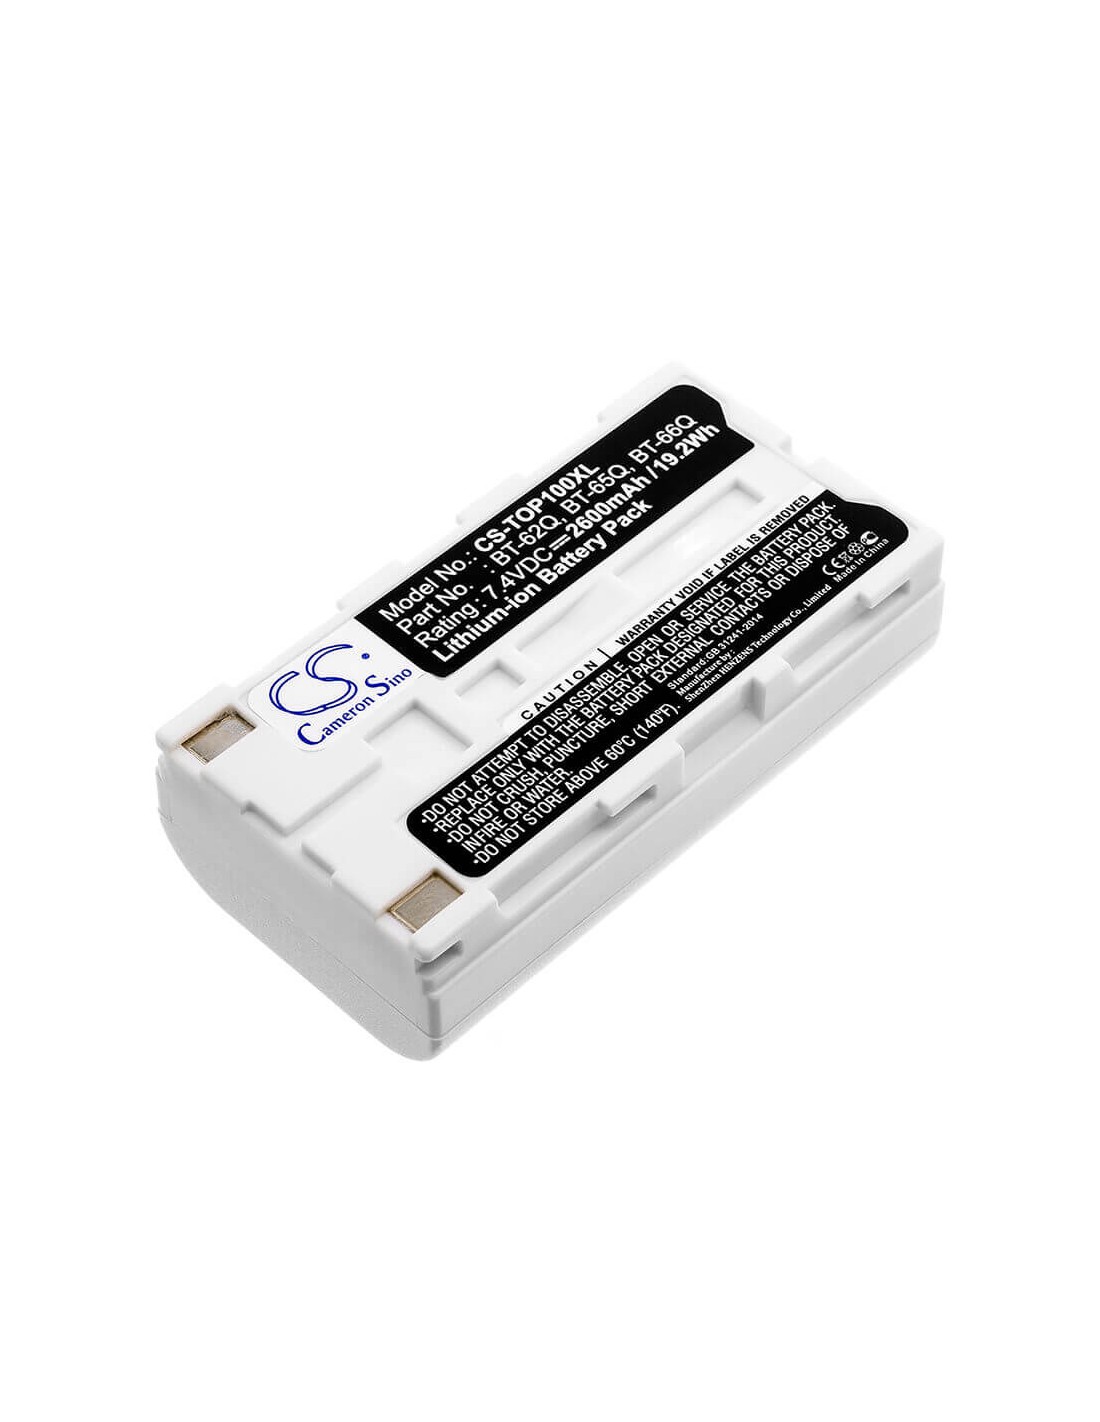 Battery for Sokkia Shc250, Shc2500, Shc250 Data Collector 7.4V, 2600mAh - 19.24Wh